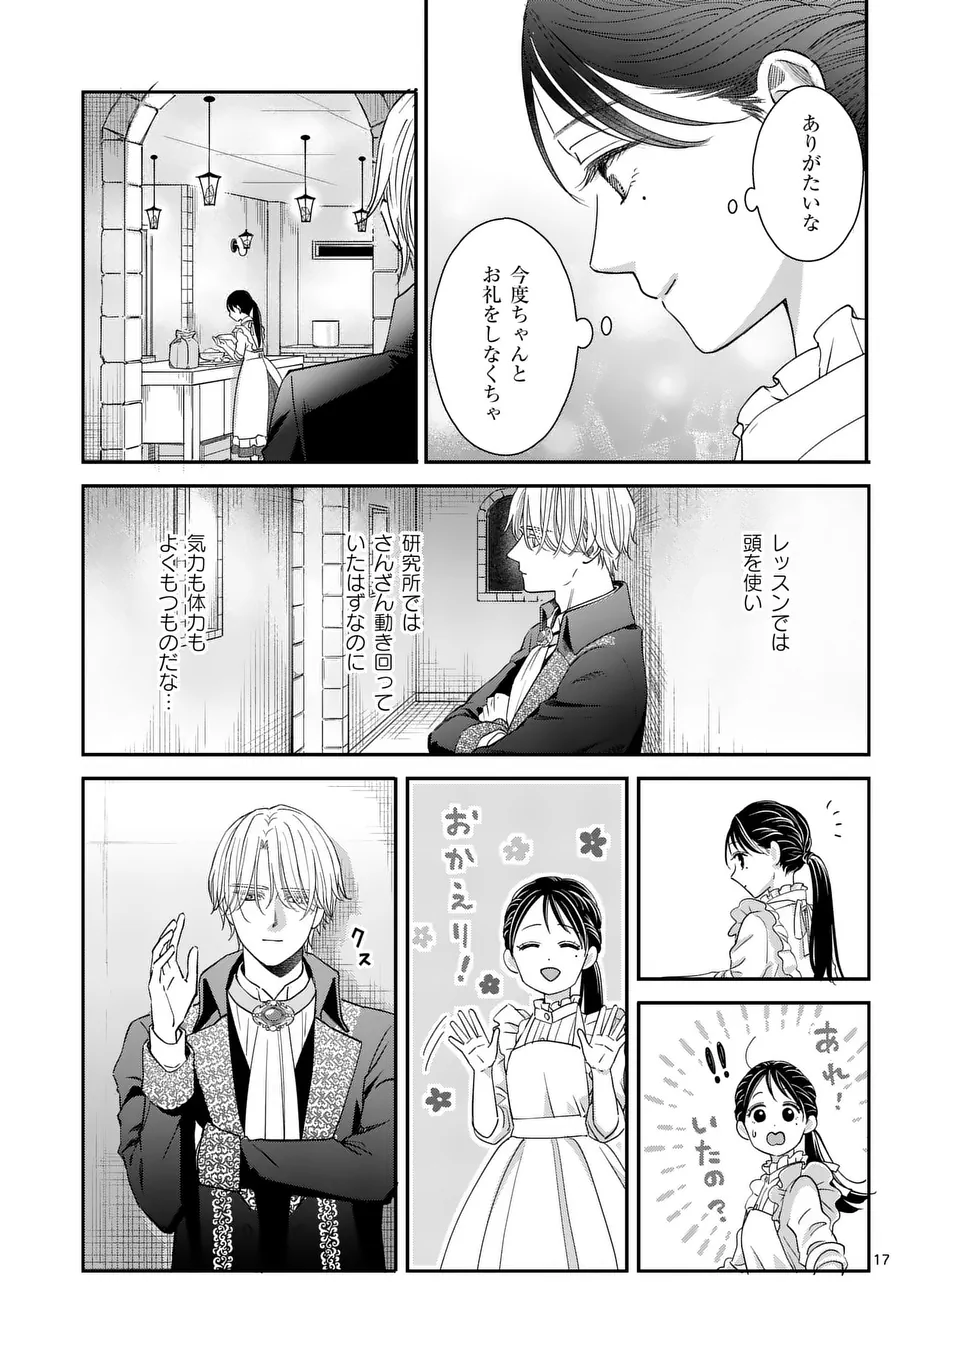 Makizoe de Isekai ni Yobidasareta no de, Sekai Kanmushi shite Wagashi Tsukurimasu - Chapter 3 - Page 17